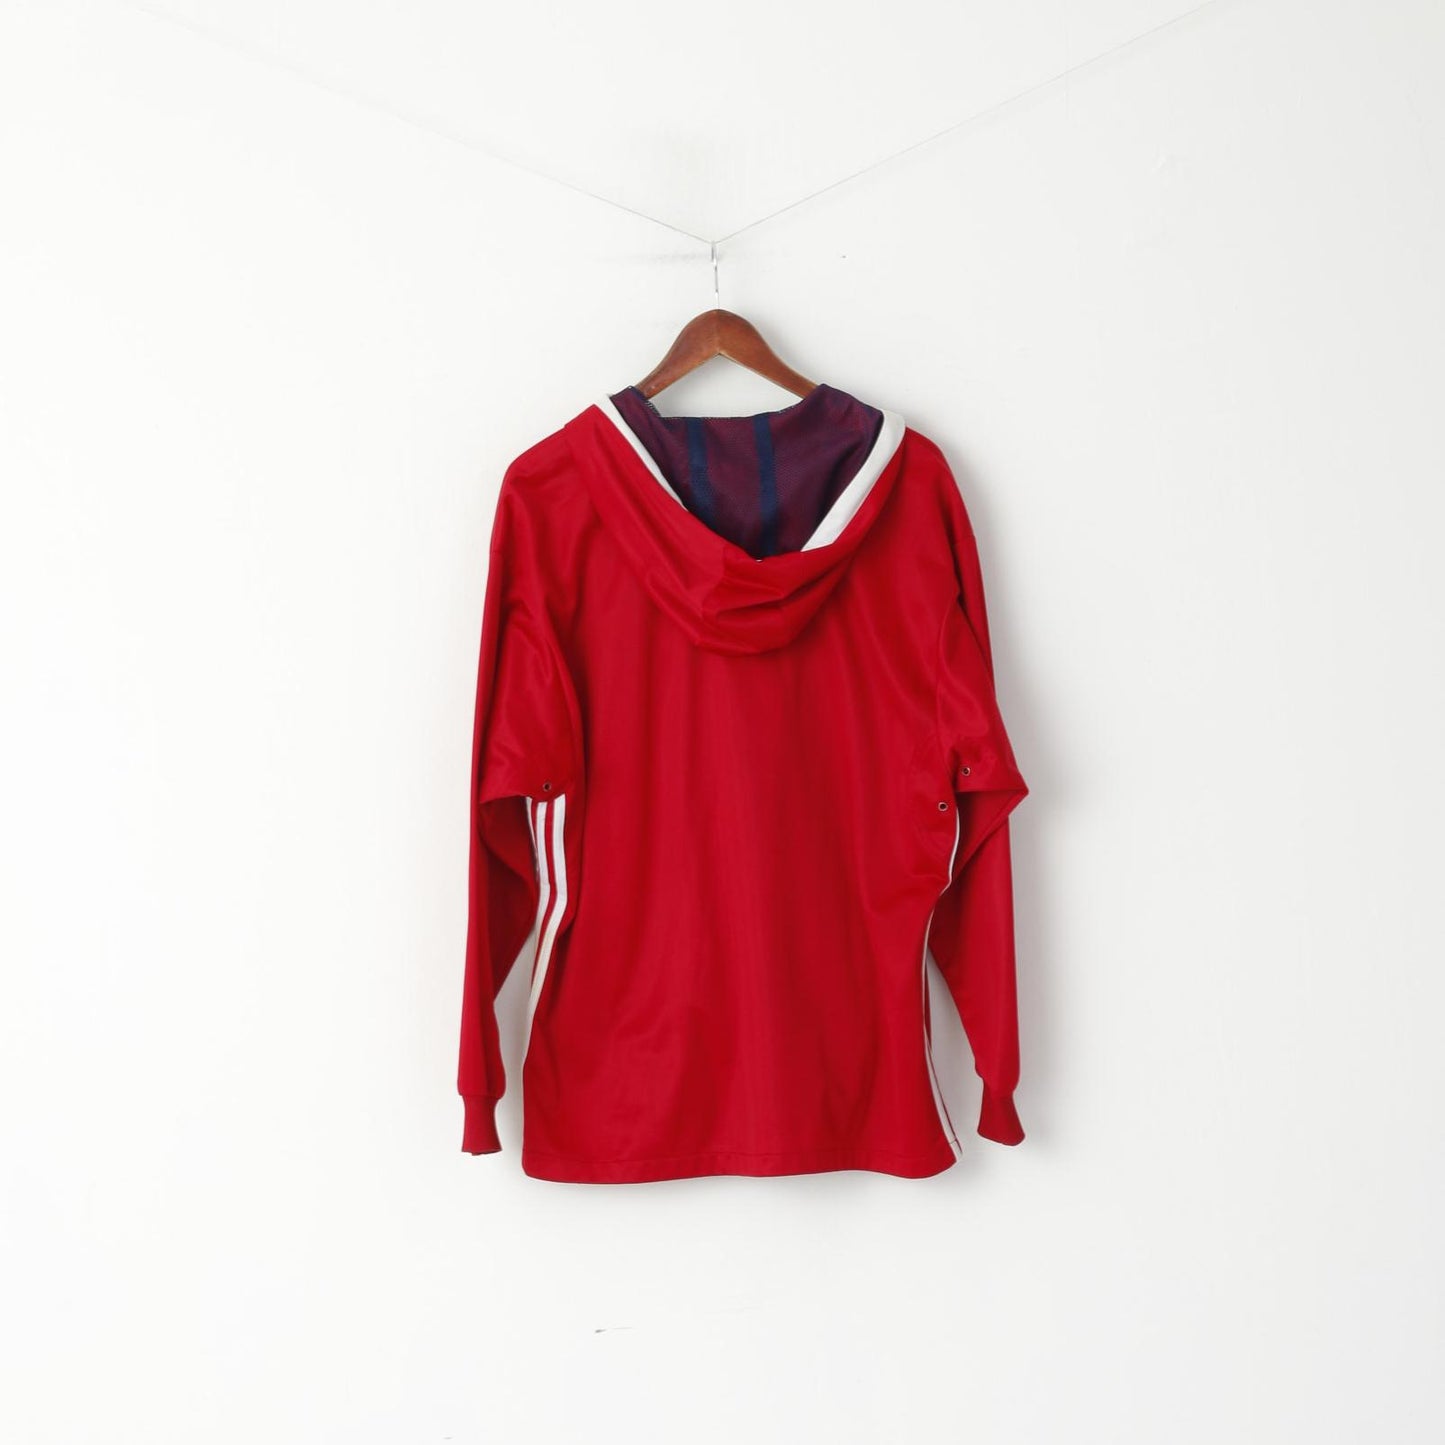 Adidas Men M Sweatshirt Shiny Red Vintage Full Zipper Hooded Oldschool Top